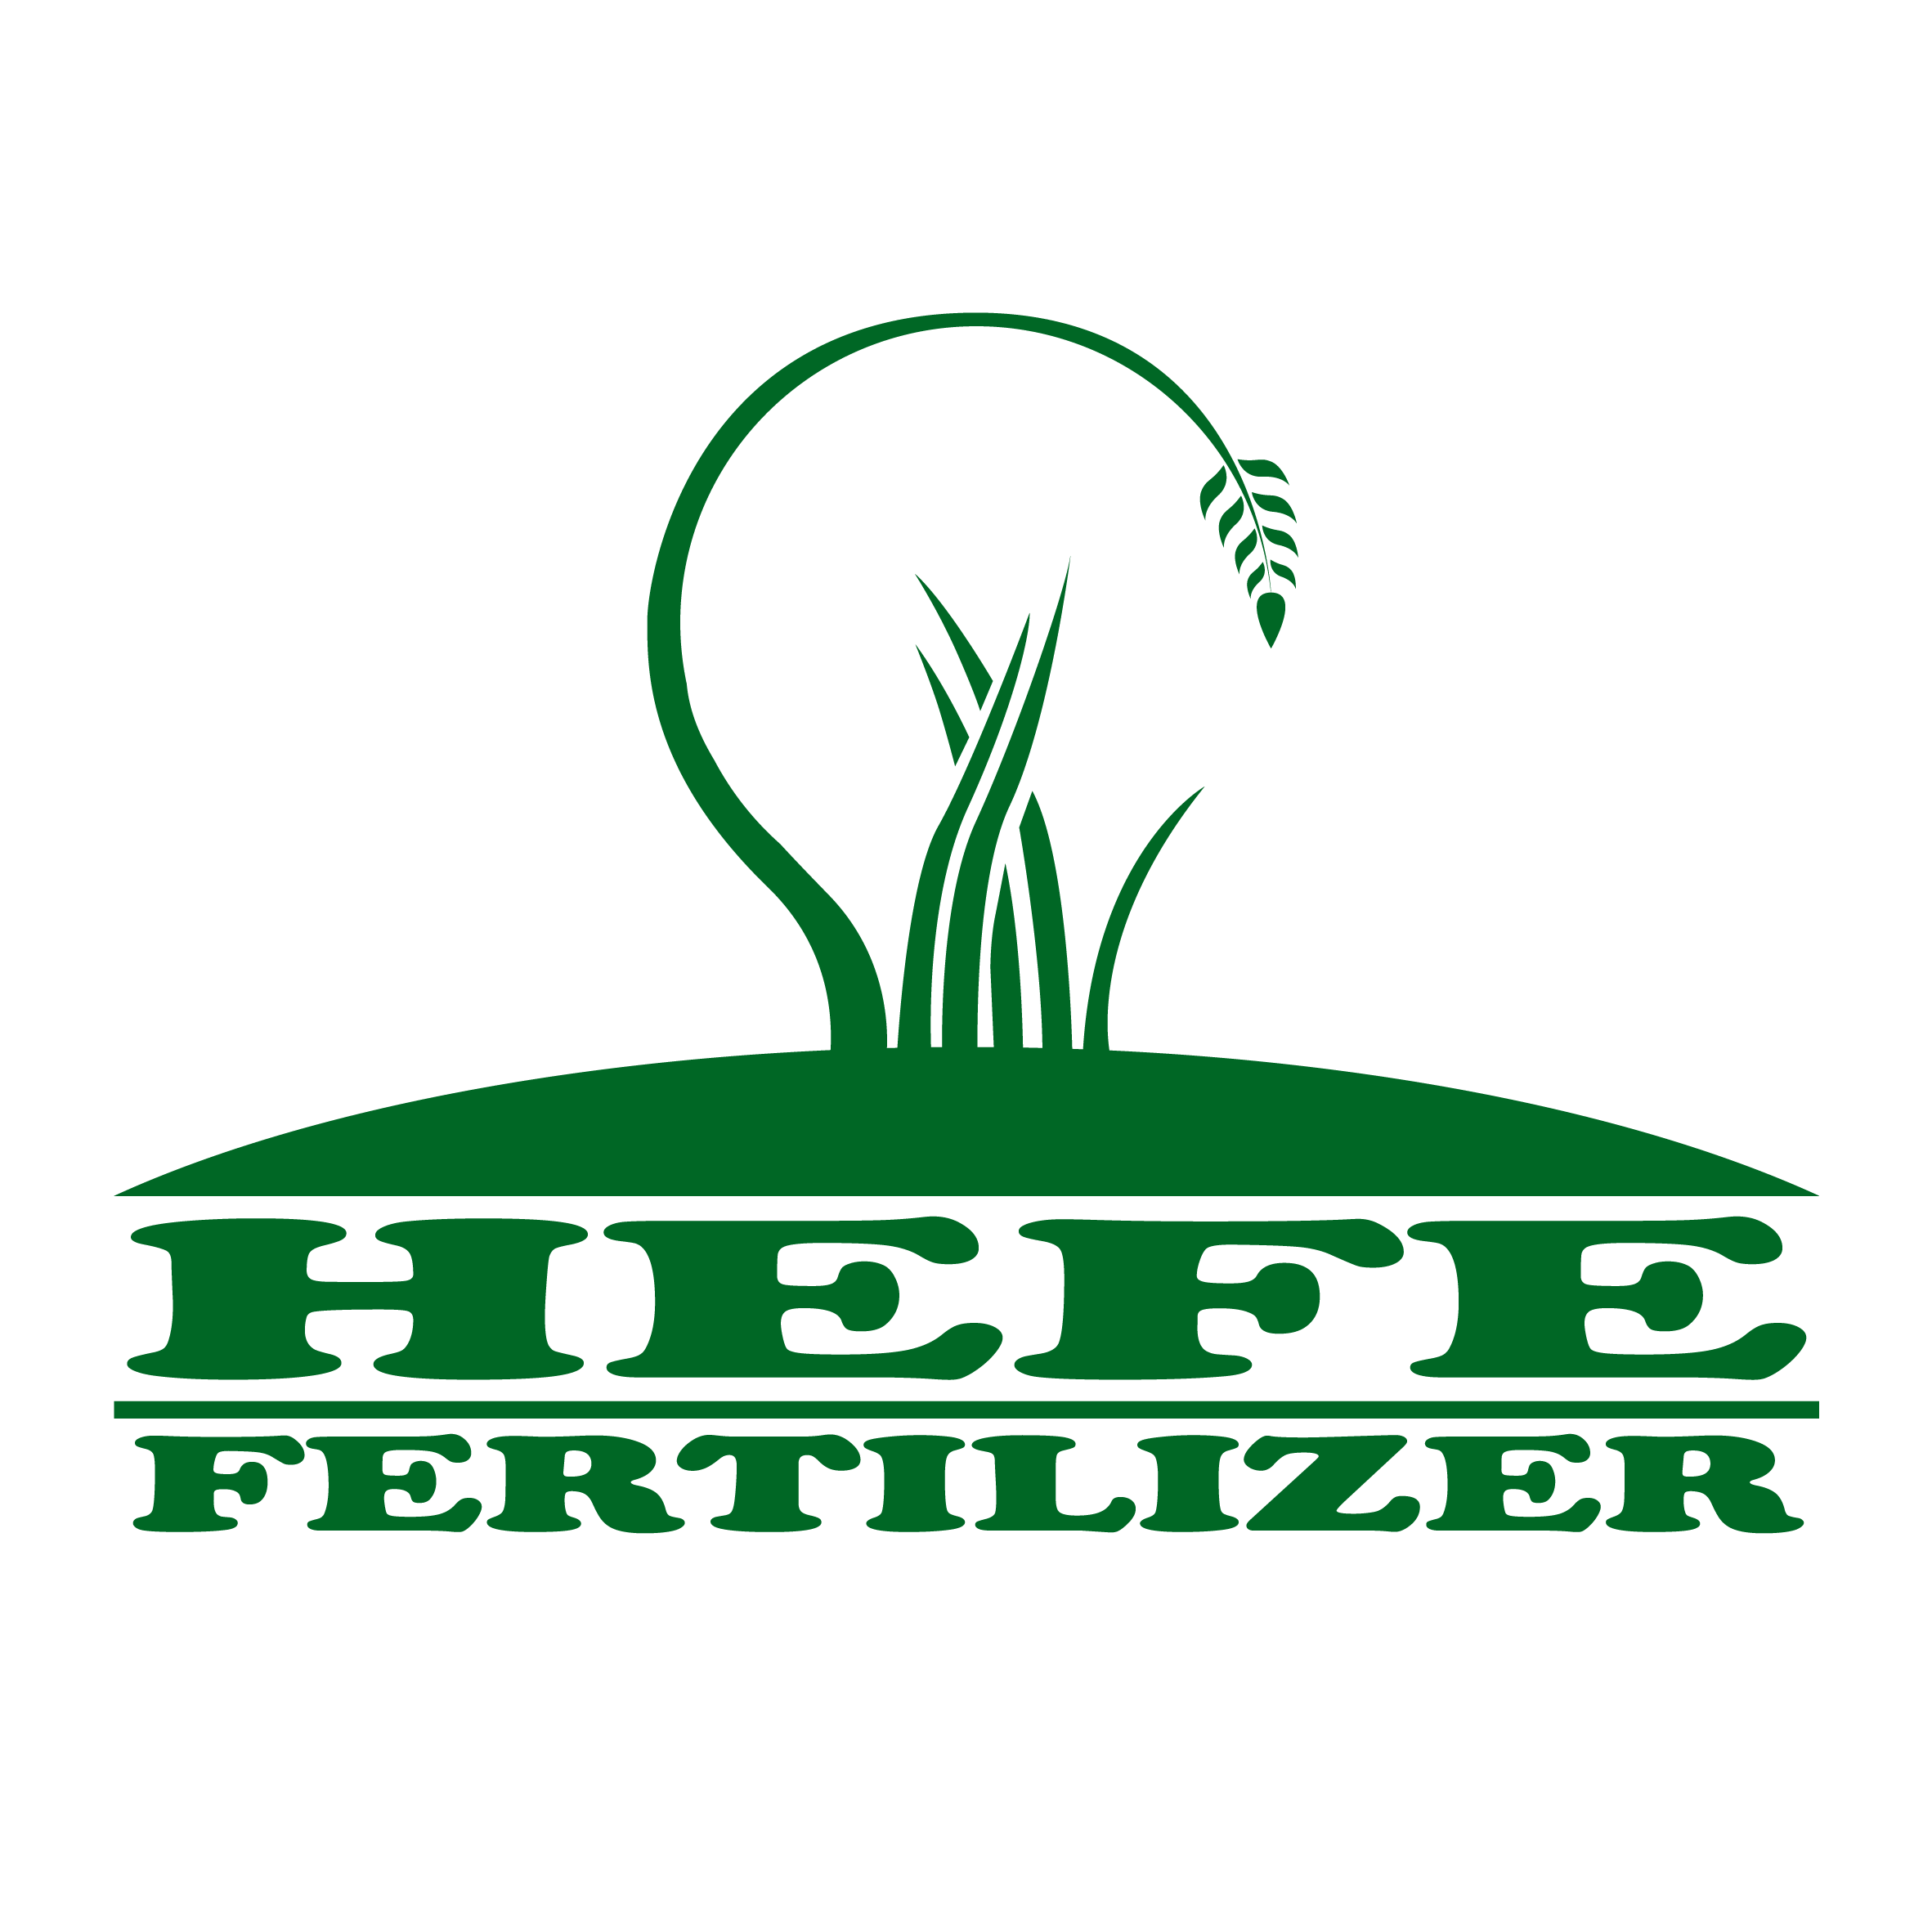 Hefe Fertilizer logo transp.png